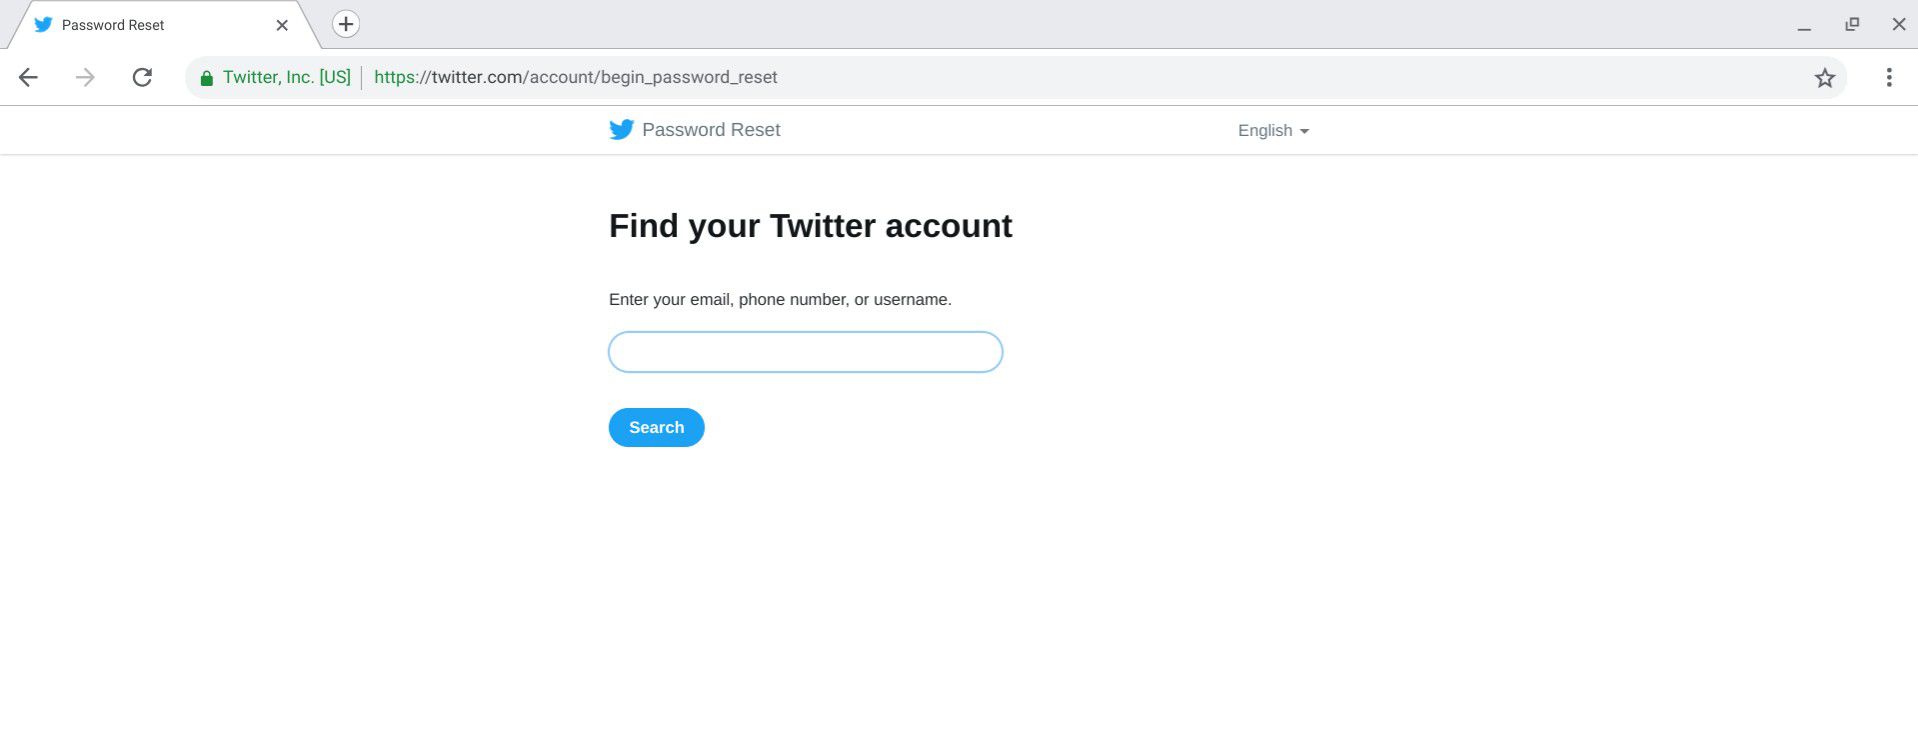 Indien nodig kunt u het wachtwoord van uw Twitter-account opnieuw instellen.